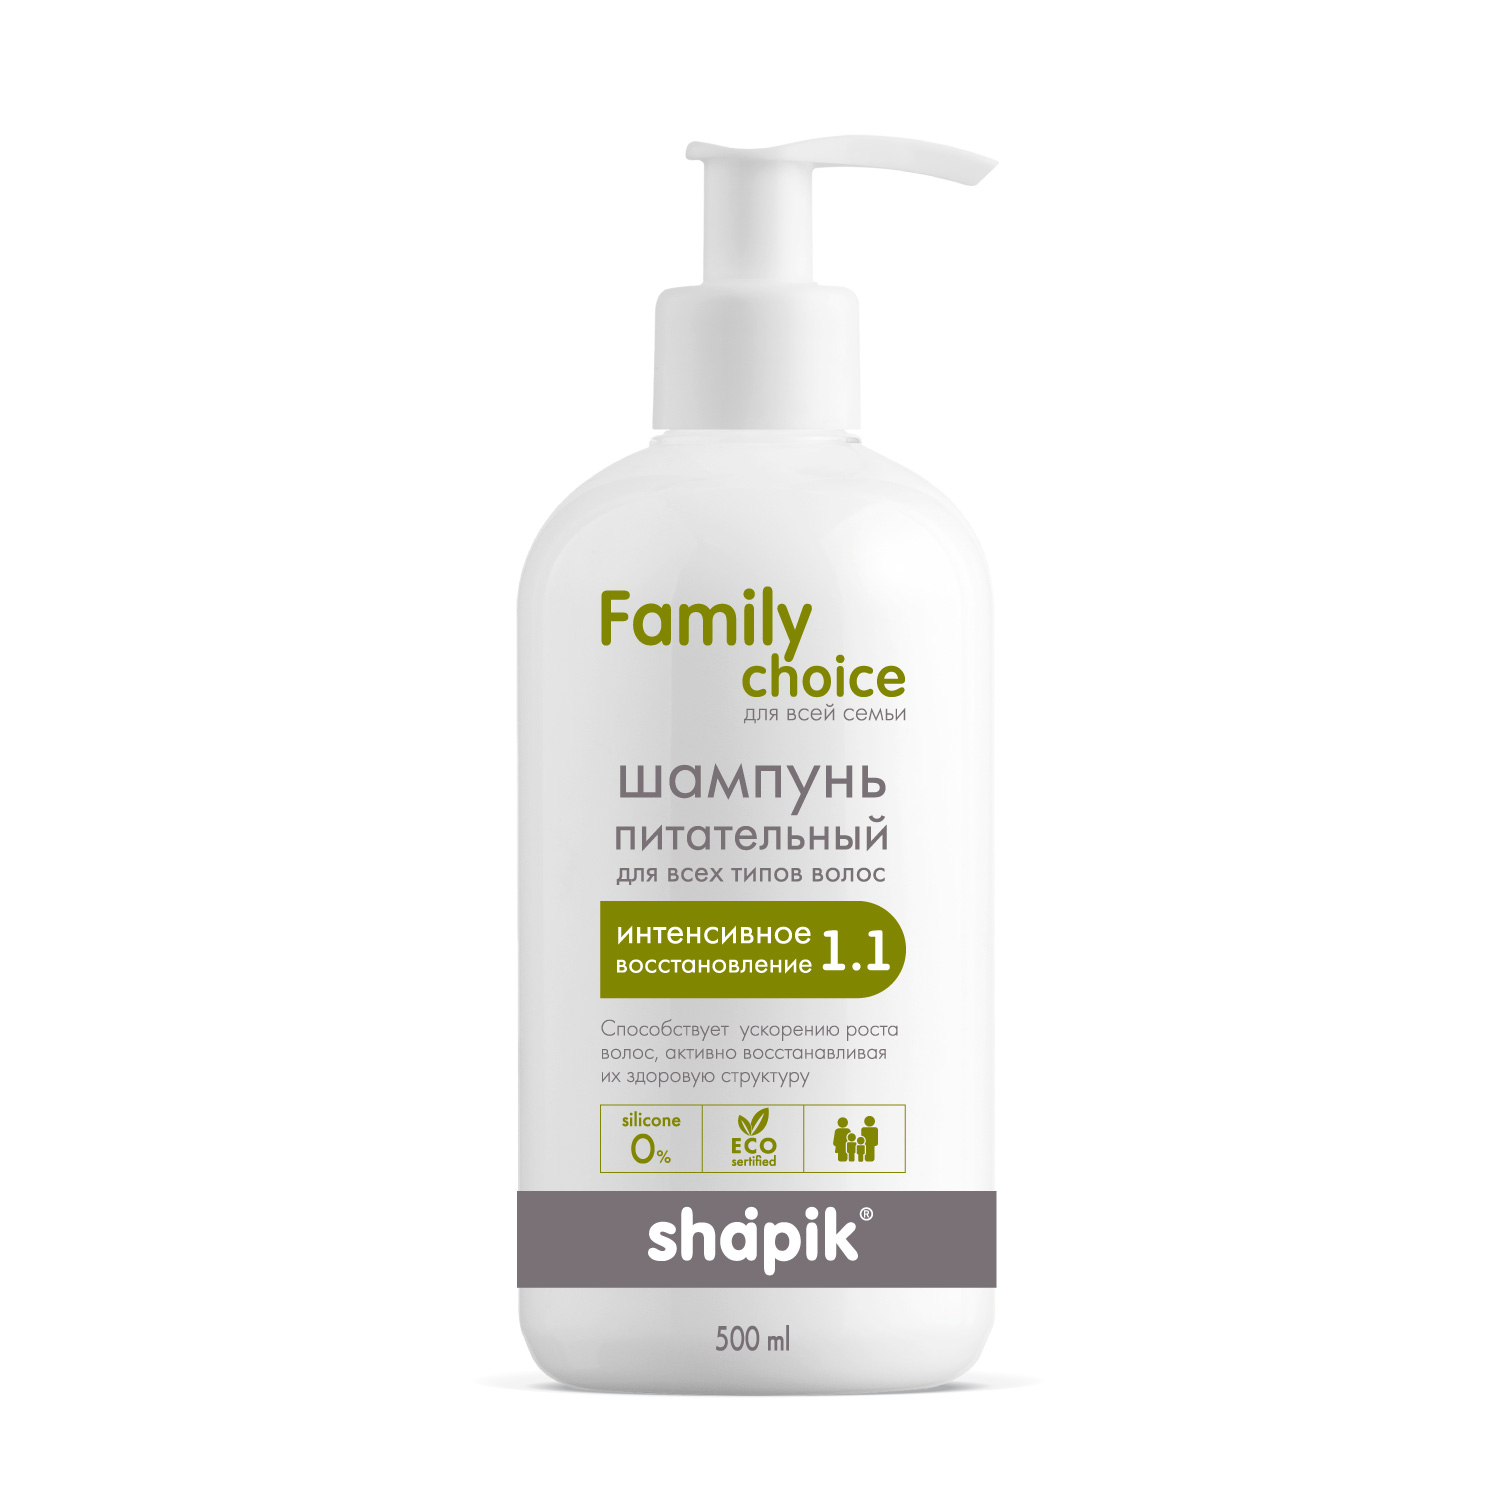 Шампунь питательный для всех типов волос серии Shapik Family Есо Сhoice, 500 мл.